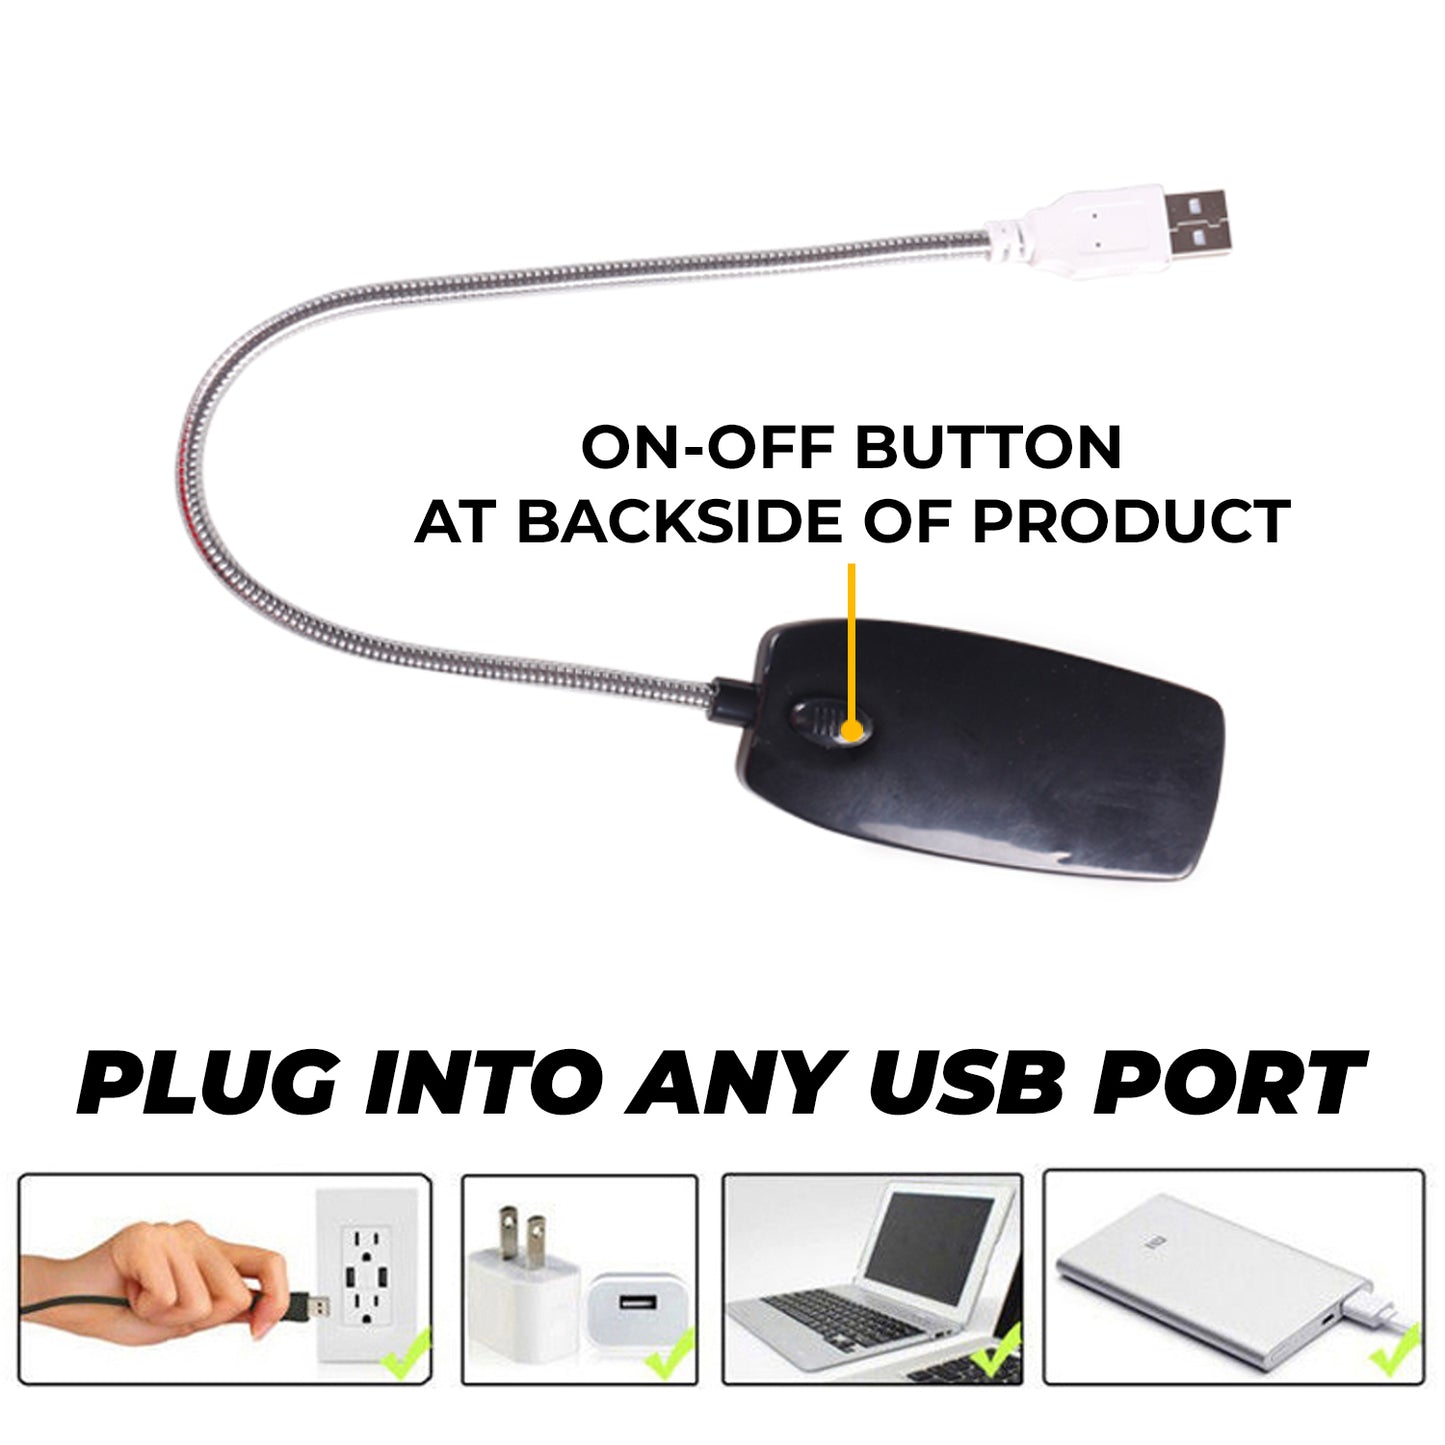 WRADER 360 Degree Flexible Gooseneck USB LED Light for Study White LED Light for Laptop Shower USB LED LAMP